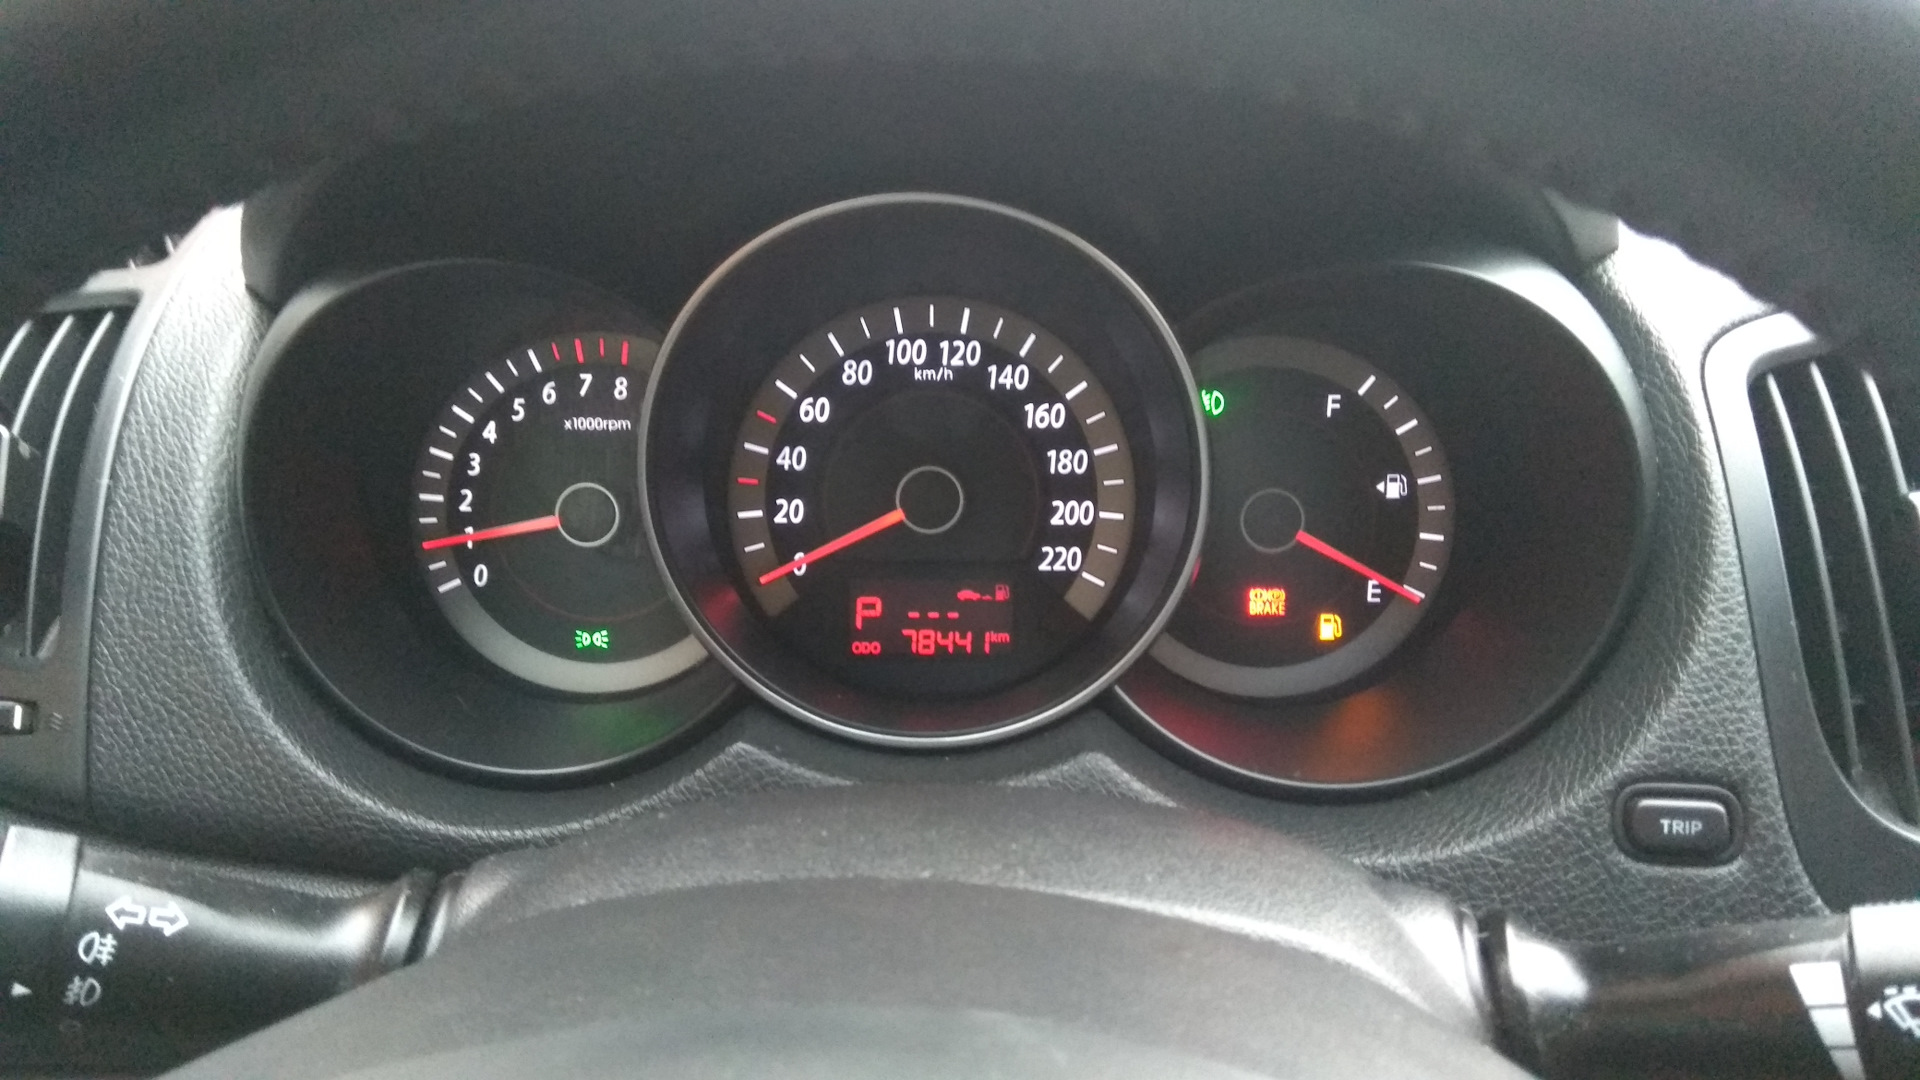 Остаток бензина на нуле Форд фокус 3. Киа Серато 2012 года загорелся желтый значок. Почему мигает манта